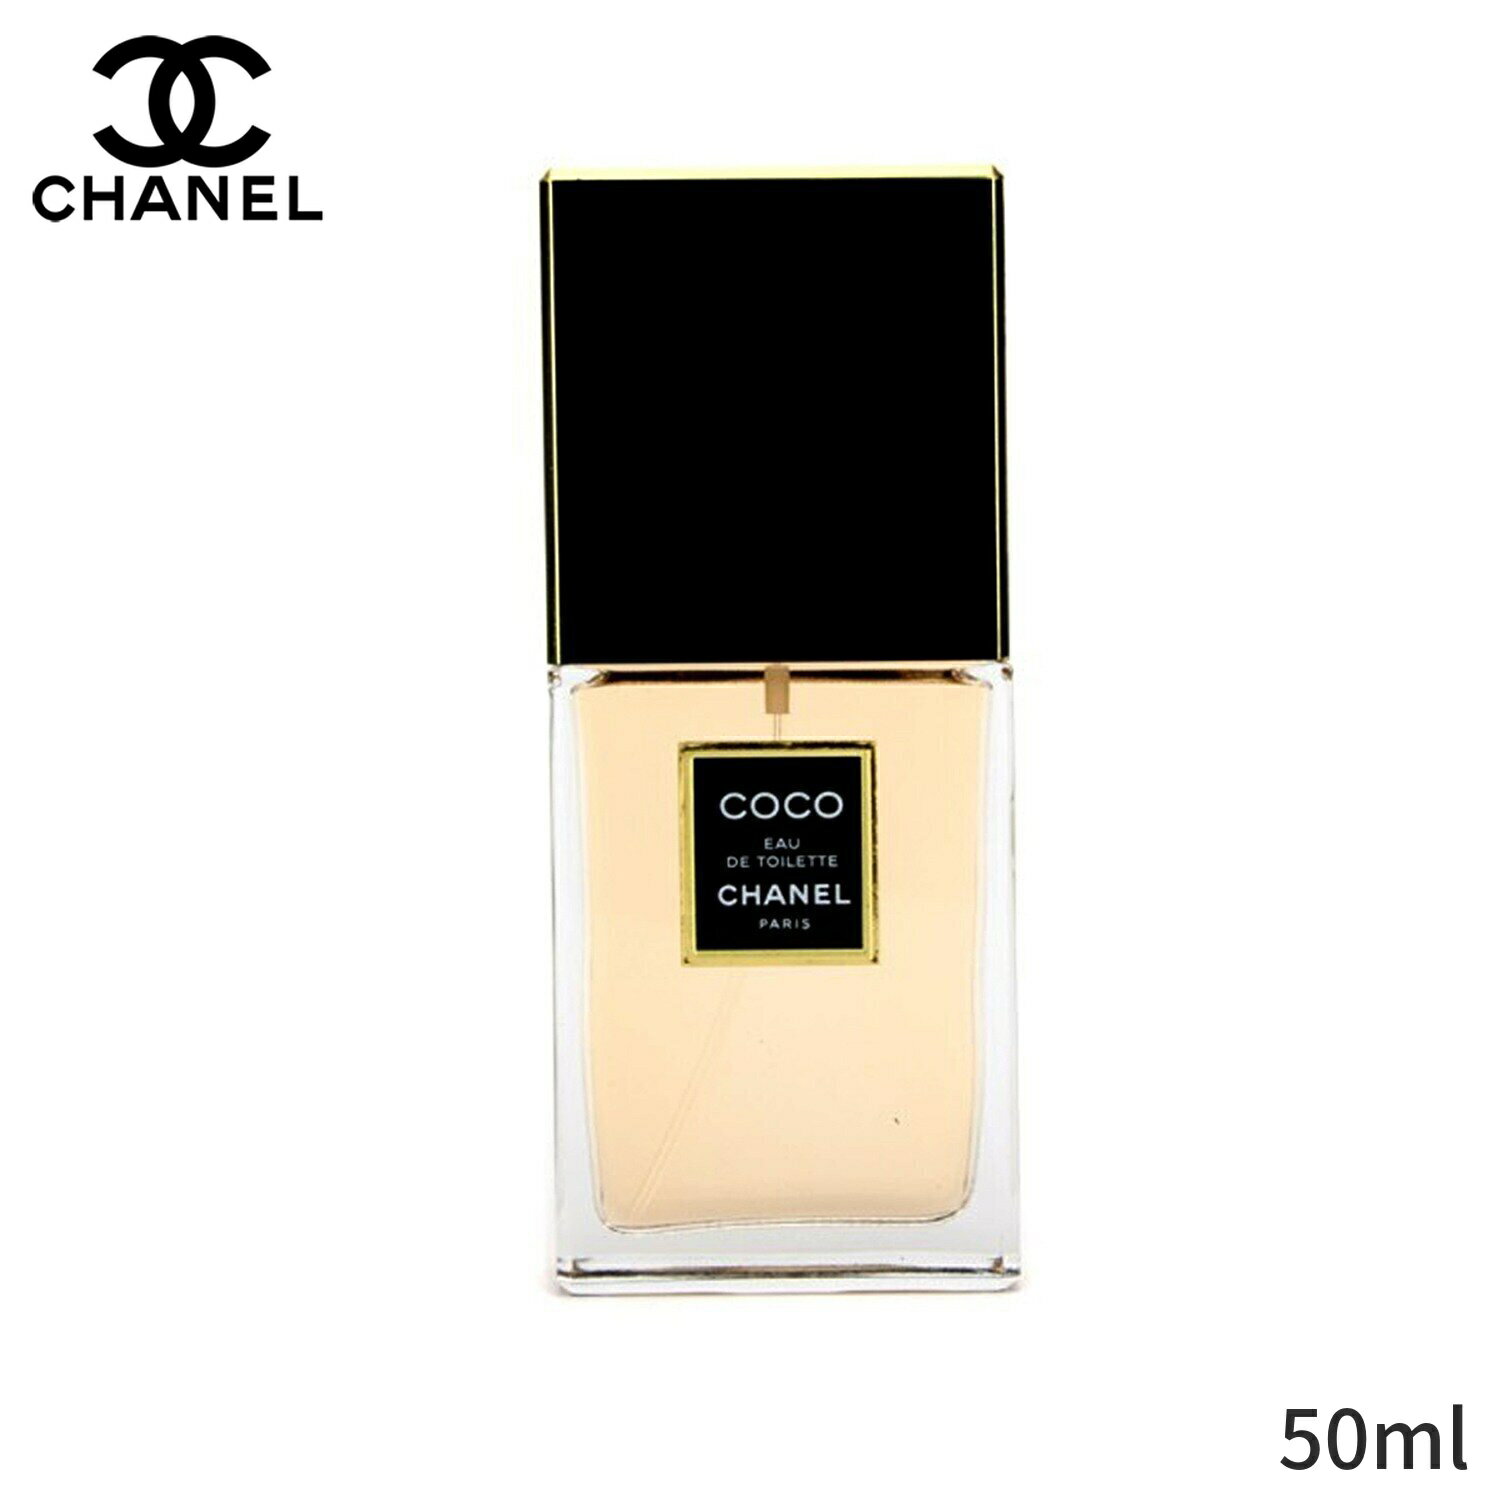 シャネル 香水 Chanel ココ オードトワレスプレー 50ml レディース 女性用 フレグランス 誕生日プレゼント ギフト 人気 ブランド コスメ